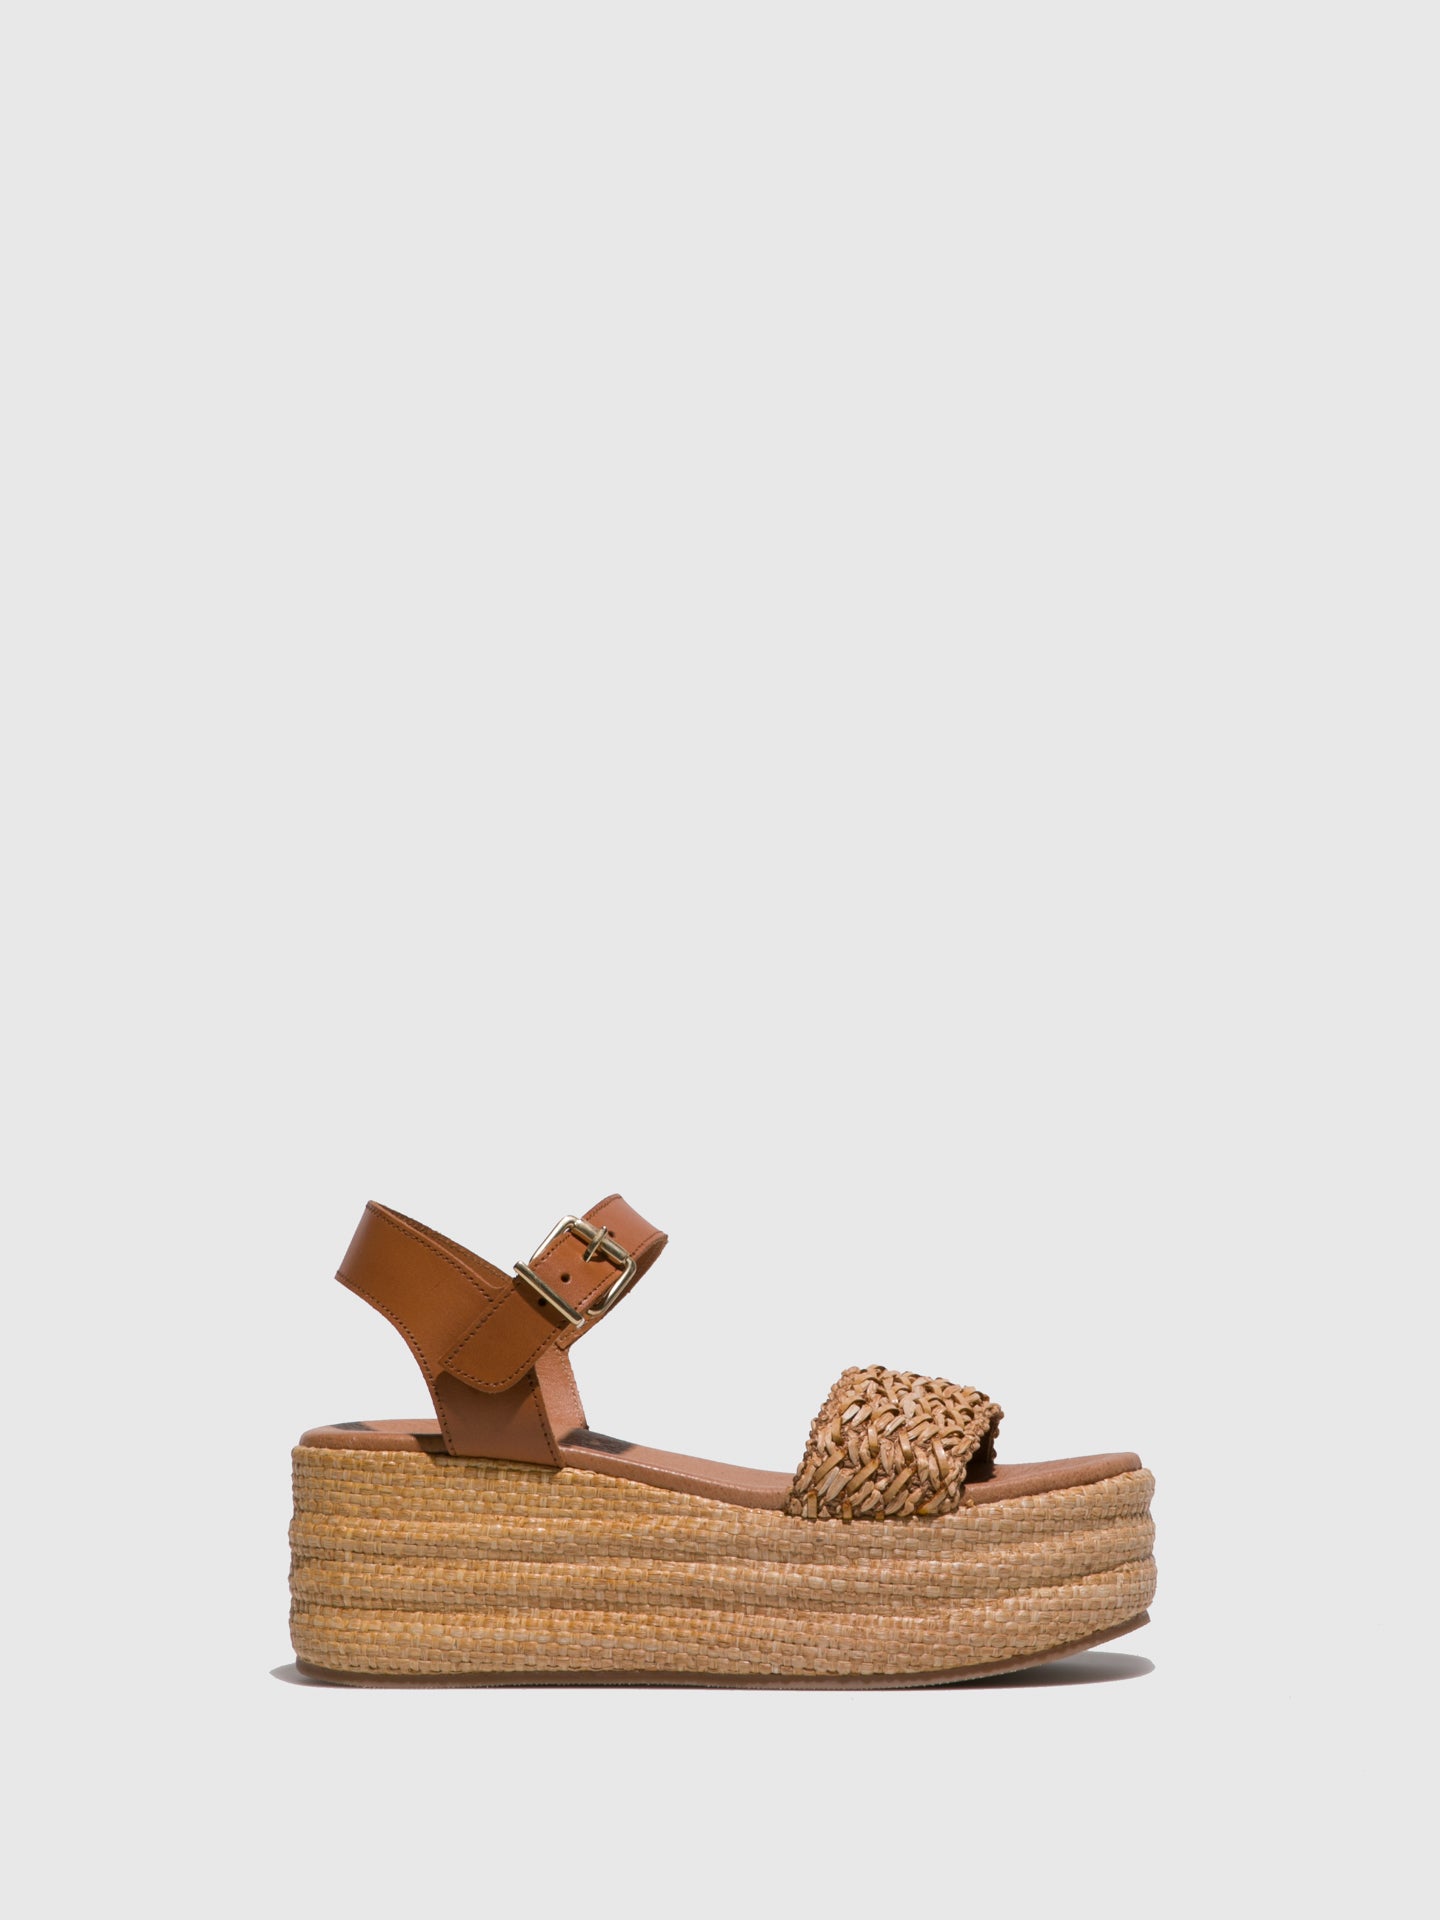 Clay's Sienna Platform Sandals